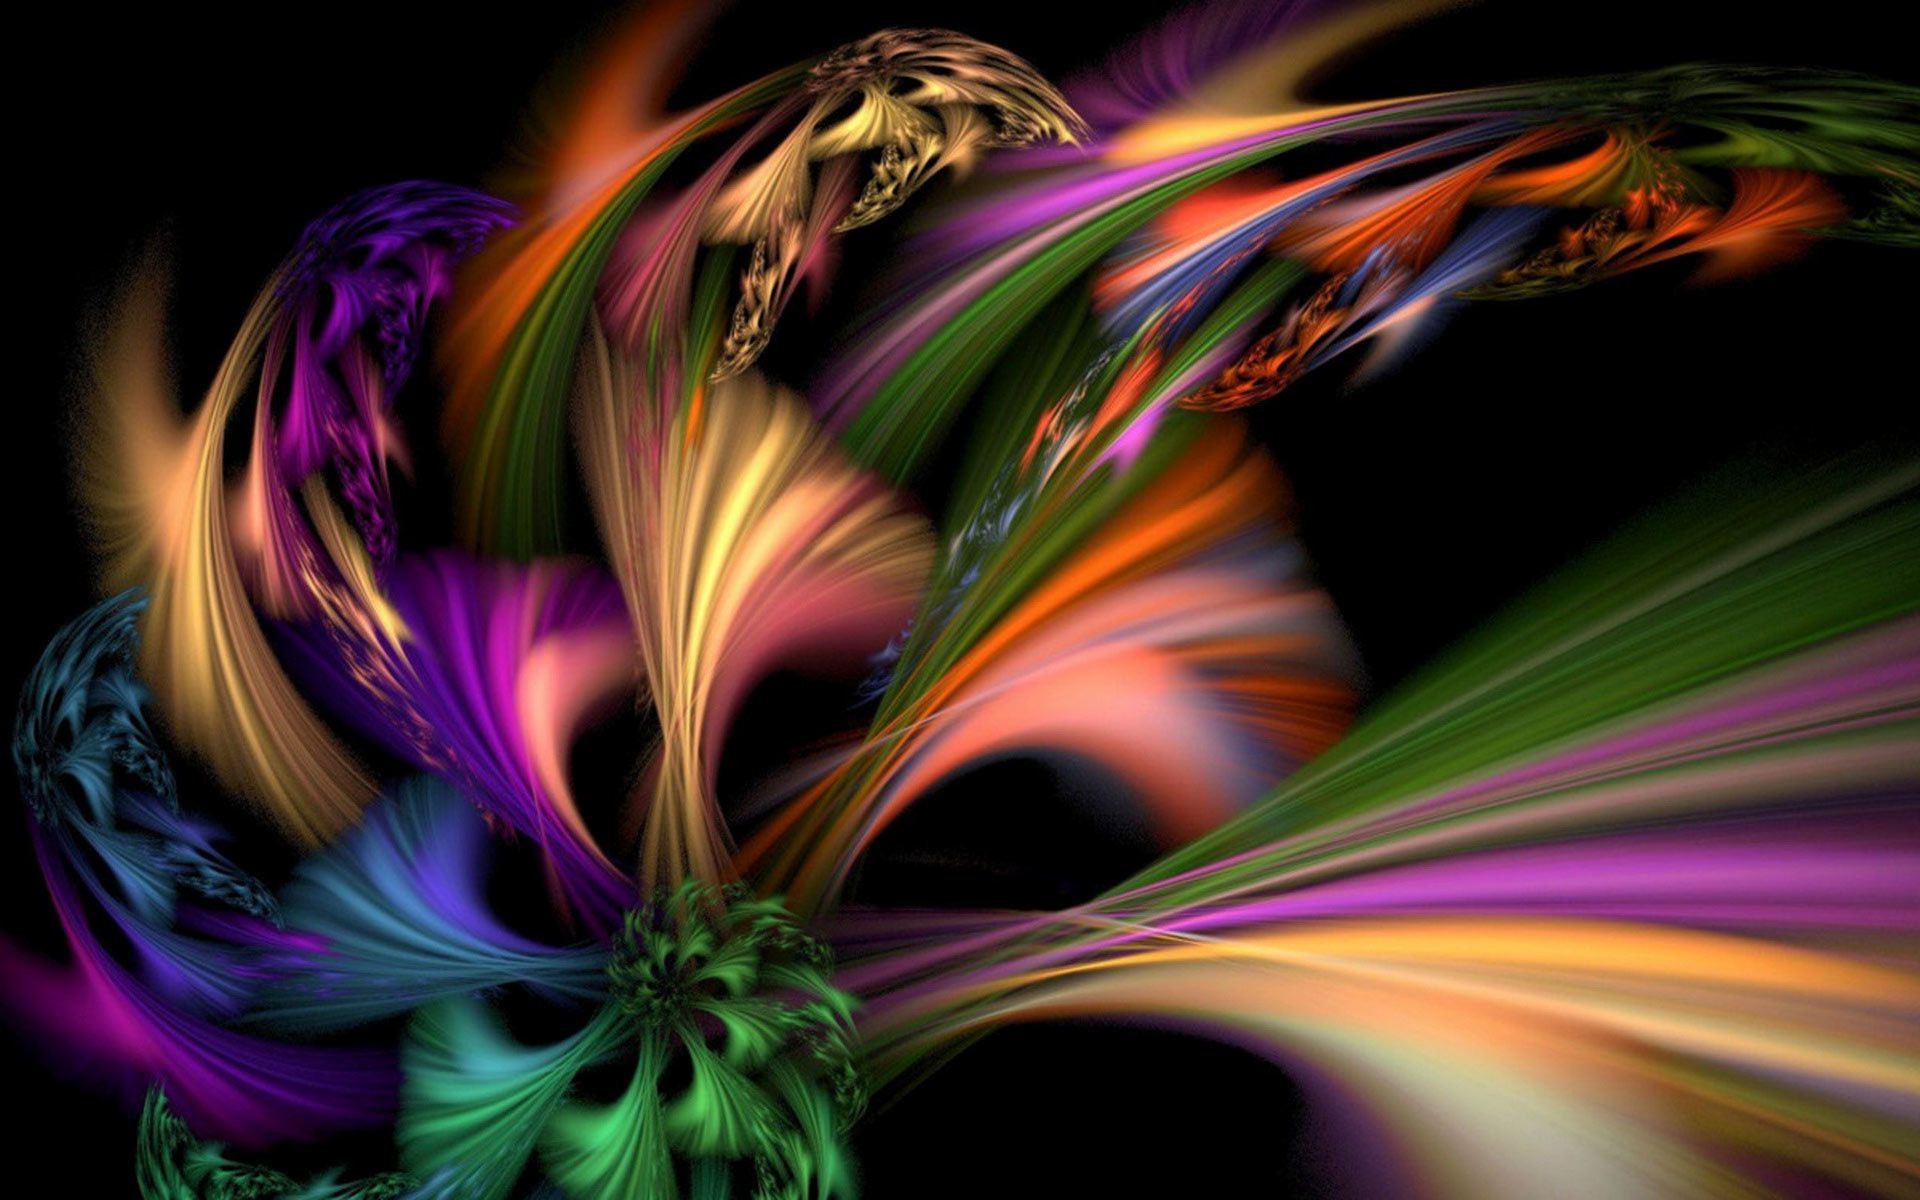 макросъемка аннотация фрактал кривая сюрреалистично искусство график фантазия пламя динамические движения размытость иллюстрация цвет фантастический линия дизайн обои текстура яркий